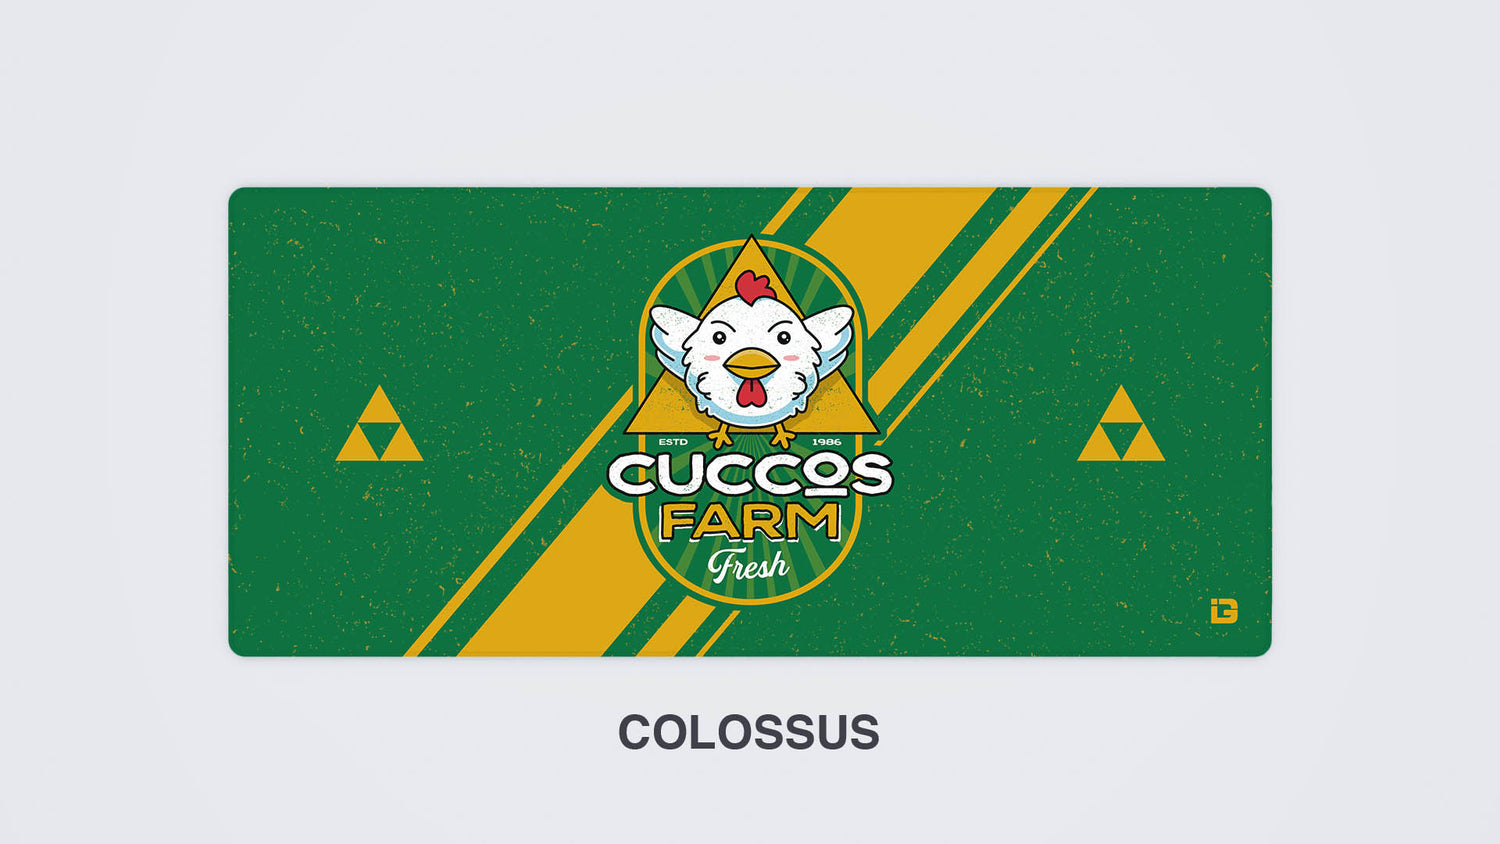 Cuccos Farm Crest